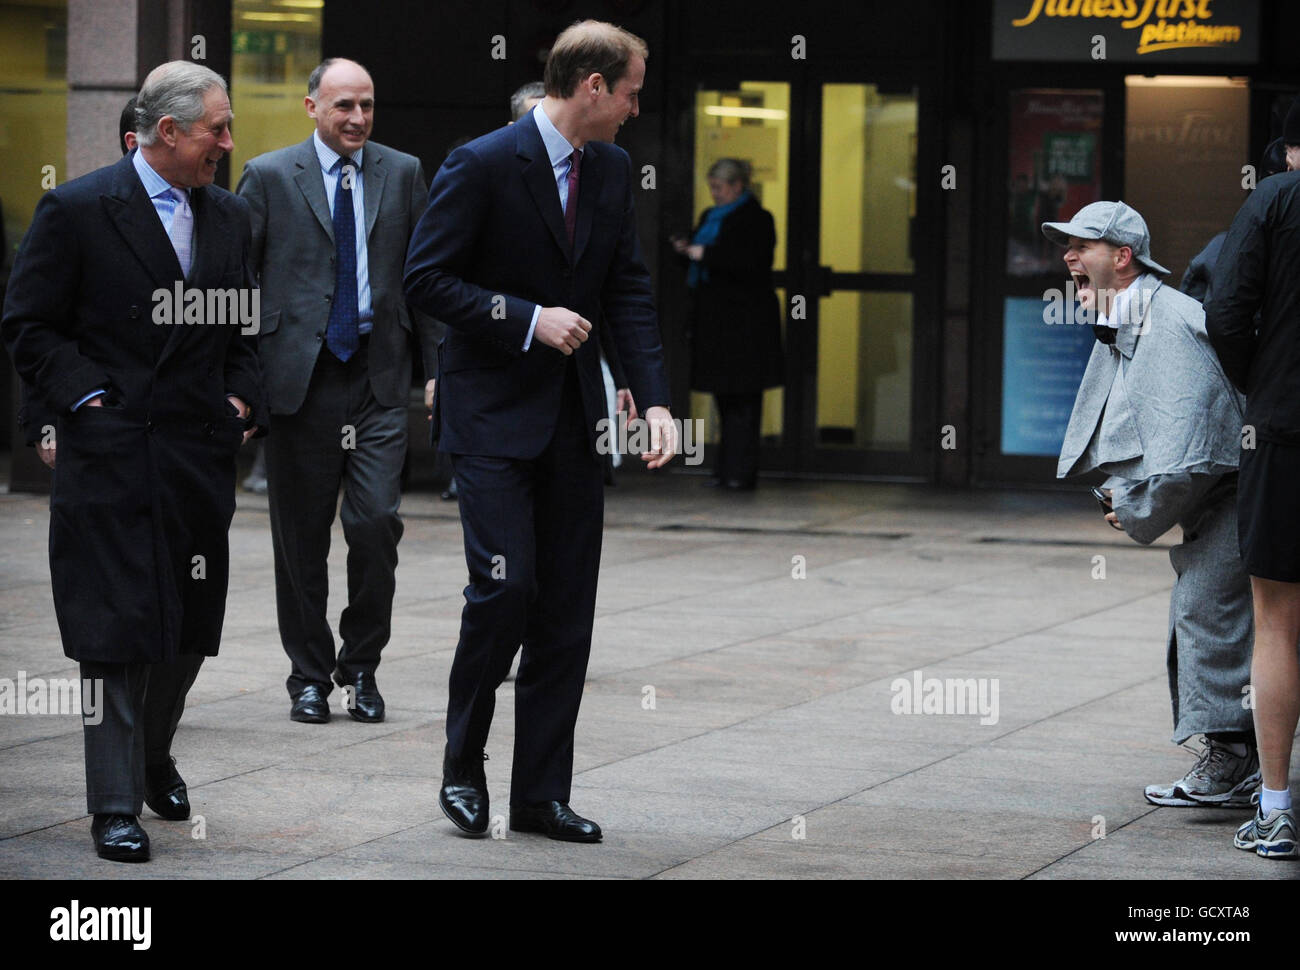 Le Prince de Galles et le Prince William voient des membres du personnel vêtus pour une œuvre de charité chez le courtier interdistributeur ICAP lorsqu'il arrive pour la Journée annuelle des œuvres caritatives de l'ICAP à Londres. Banque D'Images